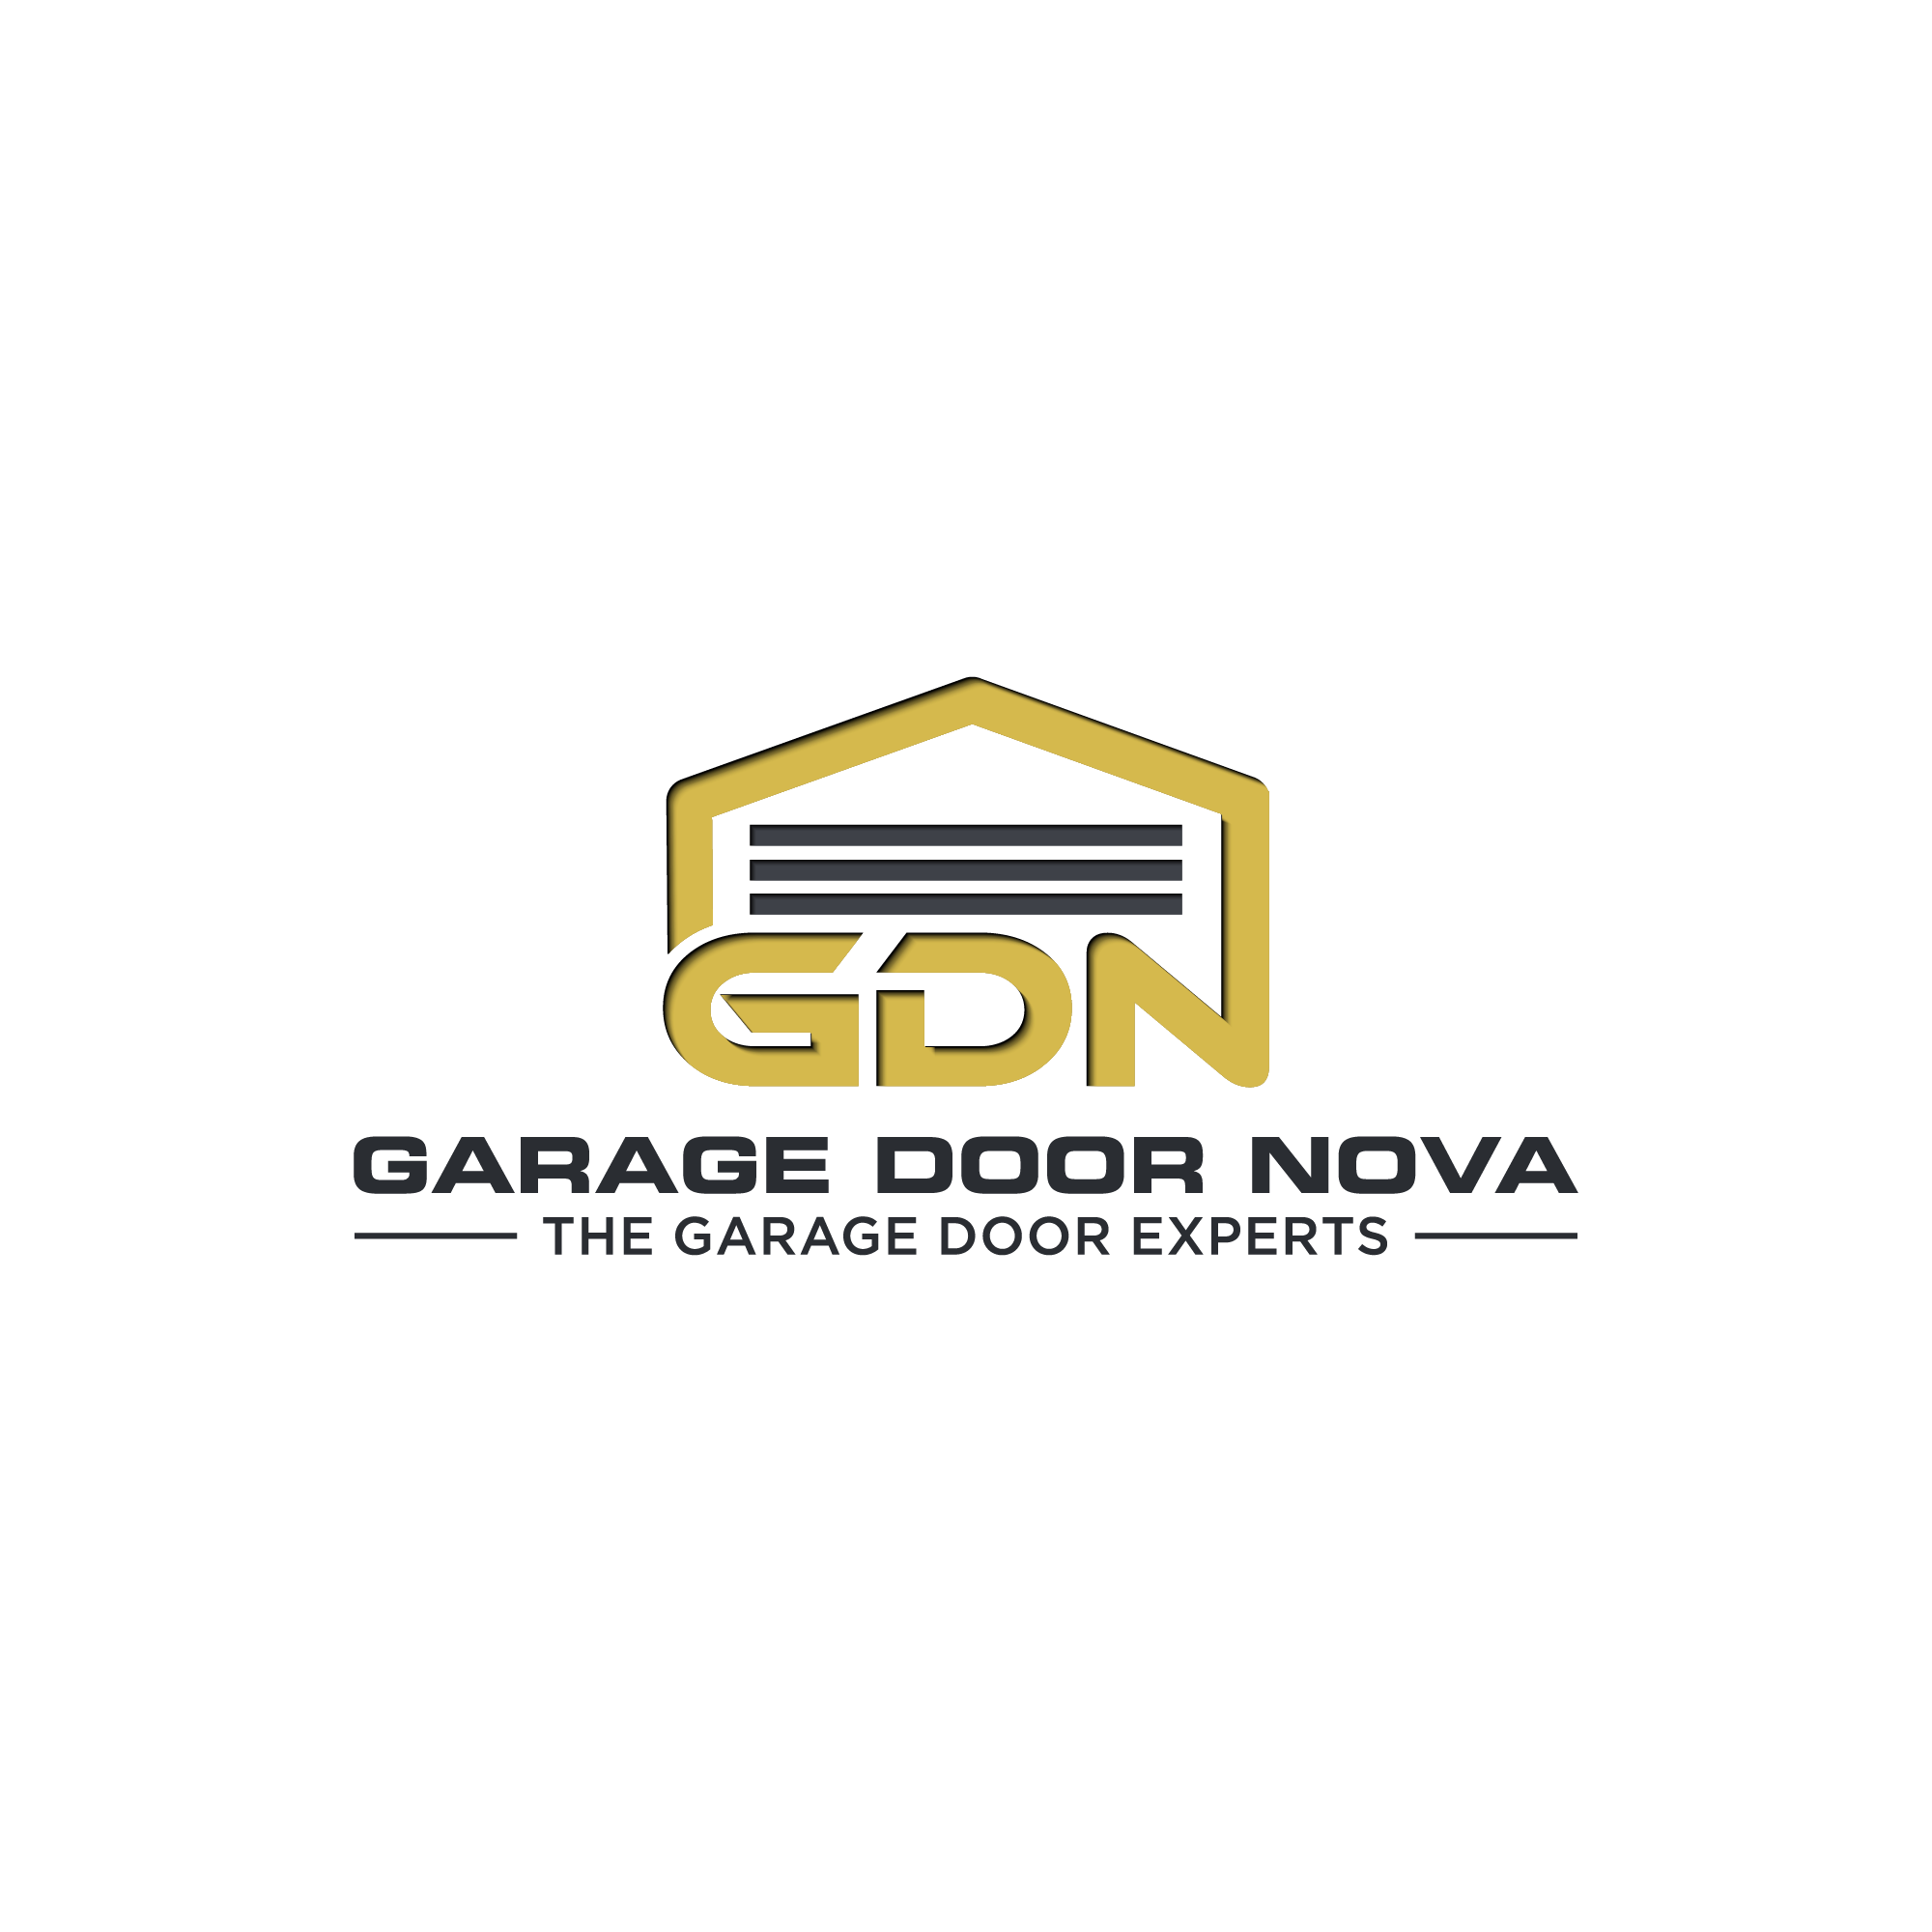 Garage Door Nova, LLC Logo